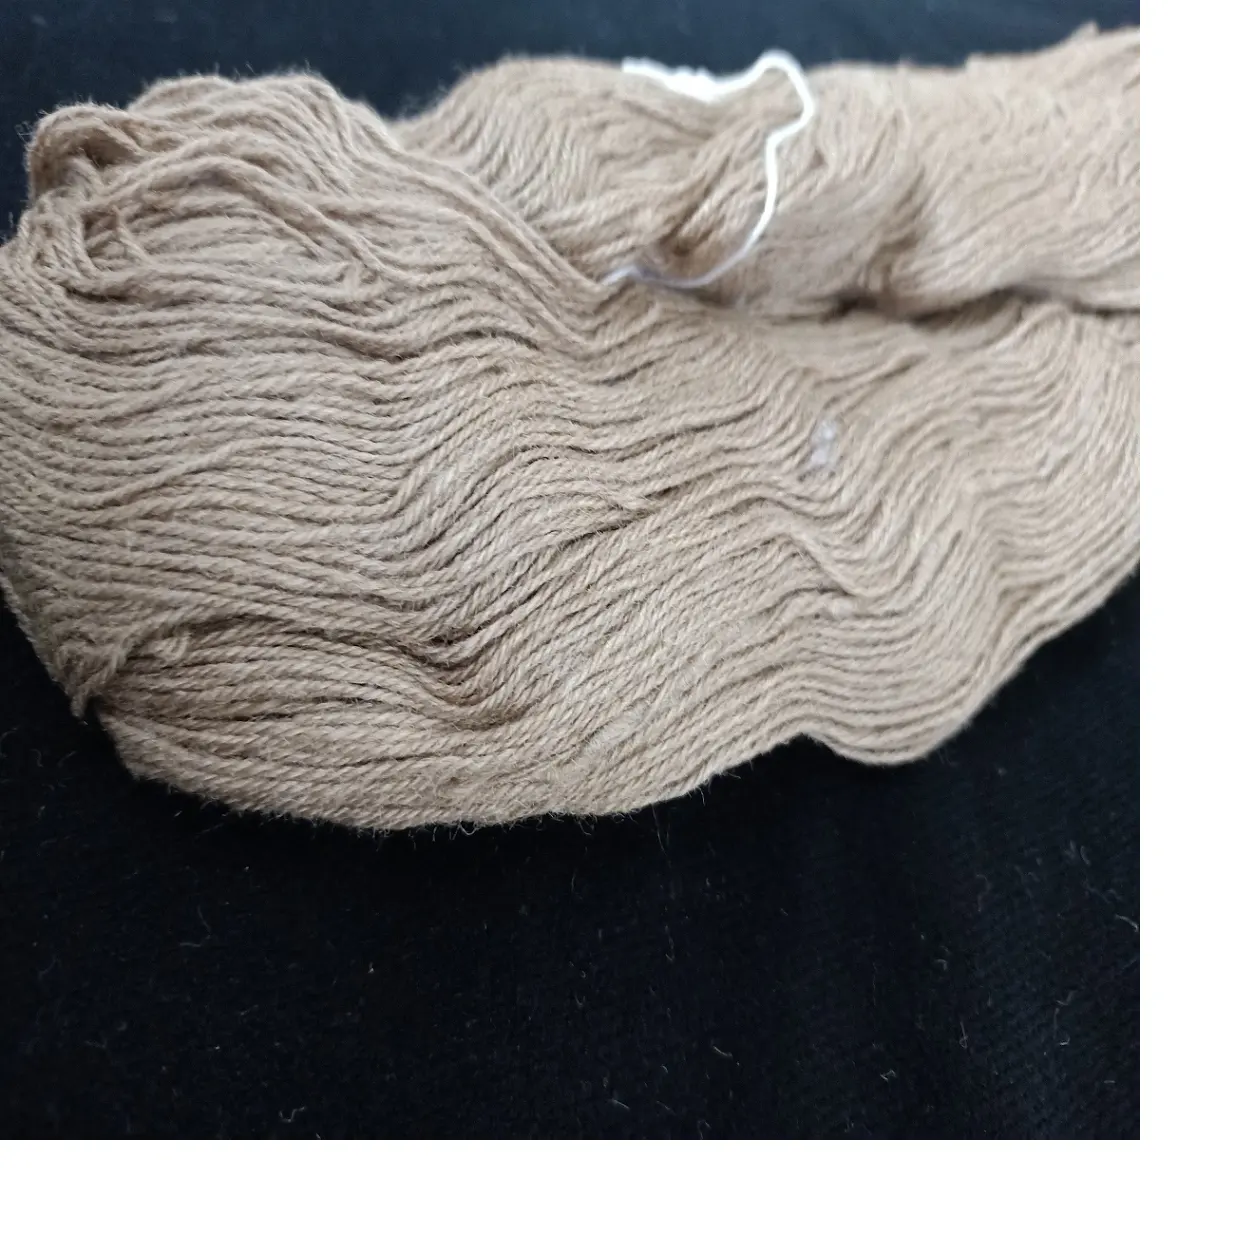 स्वाभाविक रूप से गोल्डन मूगा रेशम yarns knitters और यार्न दुकानों के लिए उपयुक्त